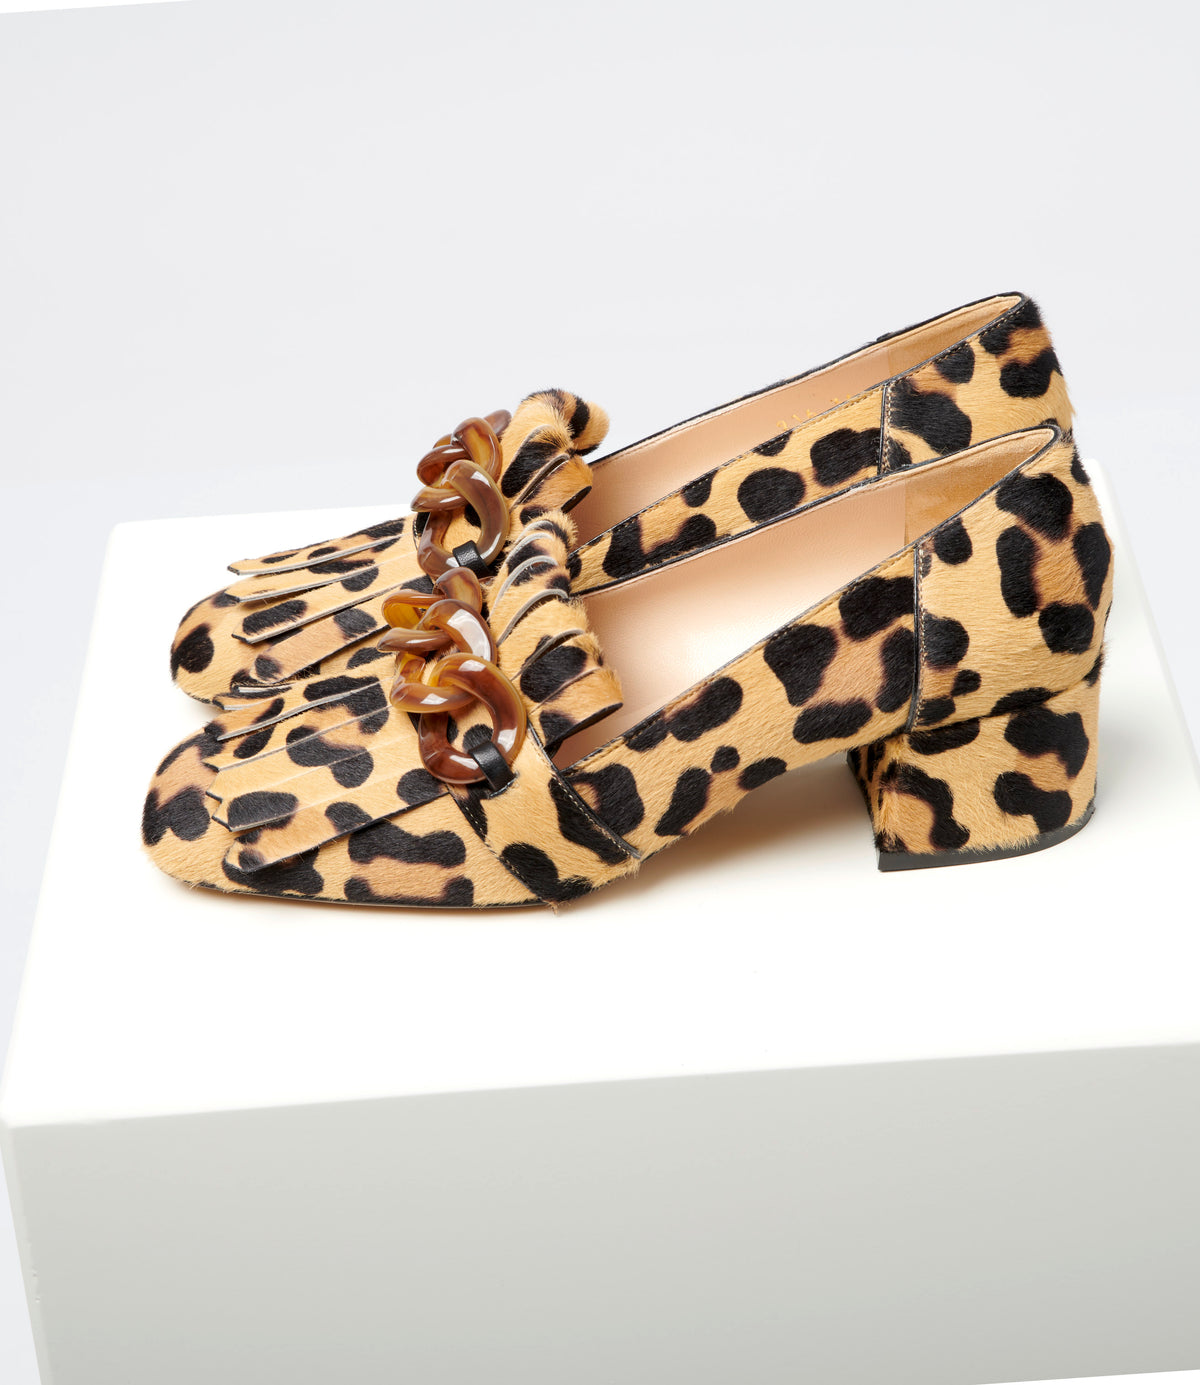 Jean Maroe - Loafer in bedruckter Leoparden-Optik mit Plexikette